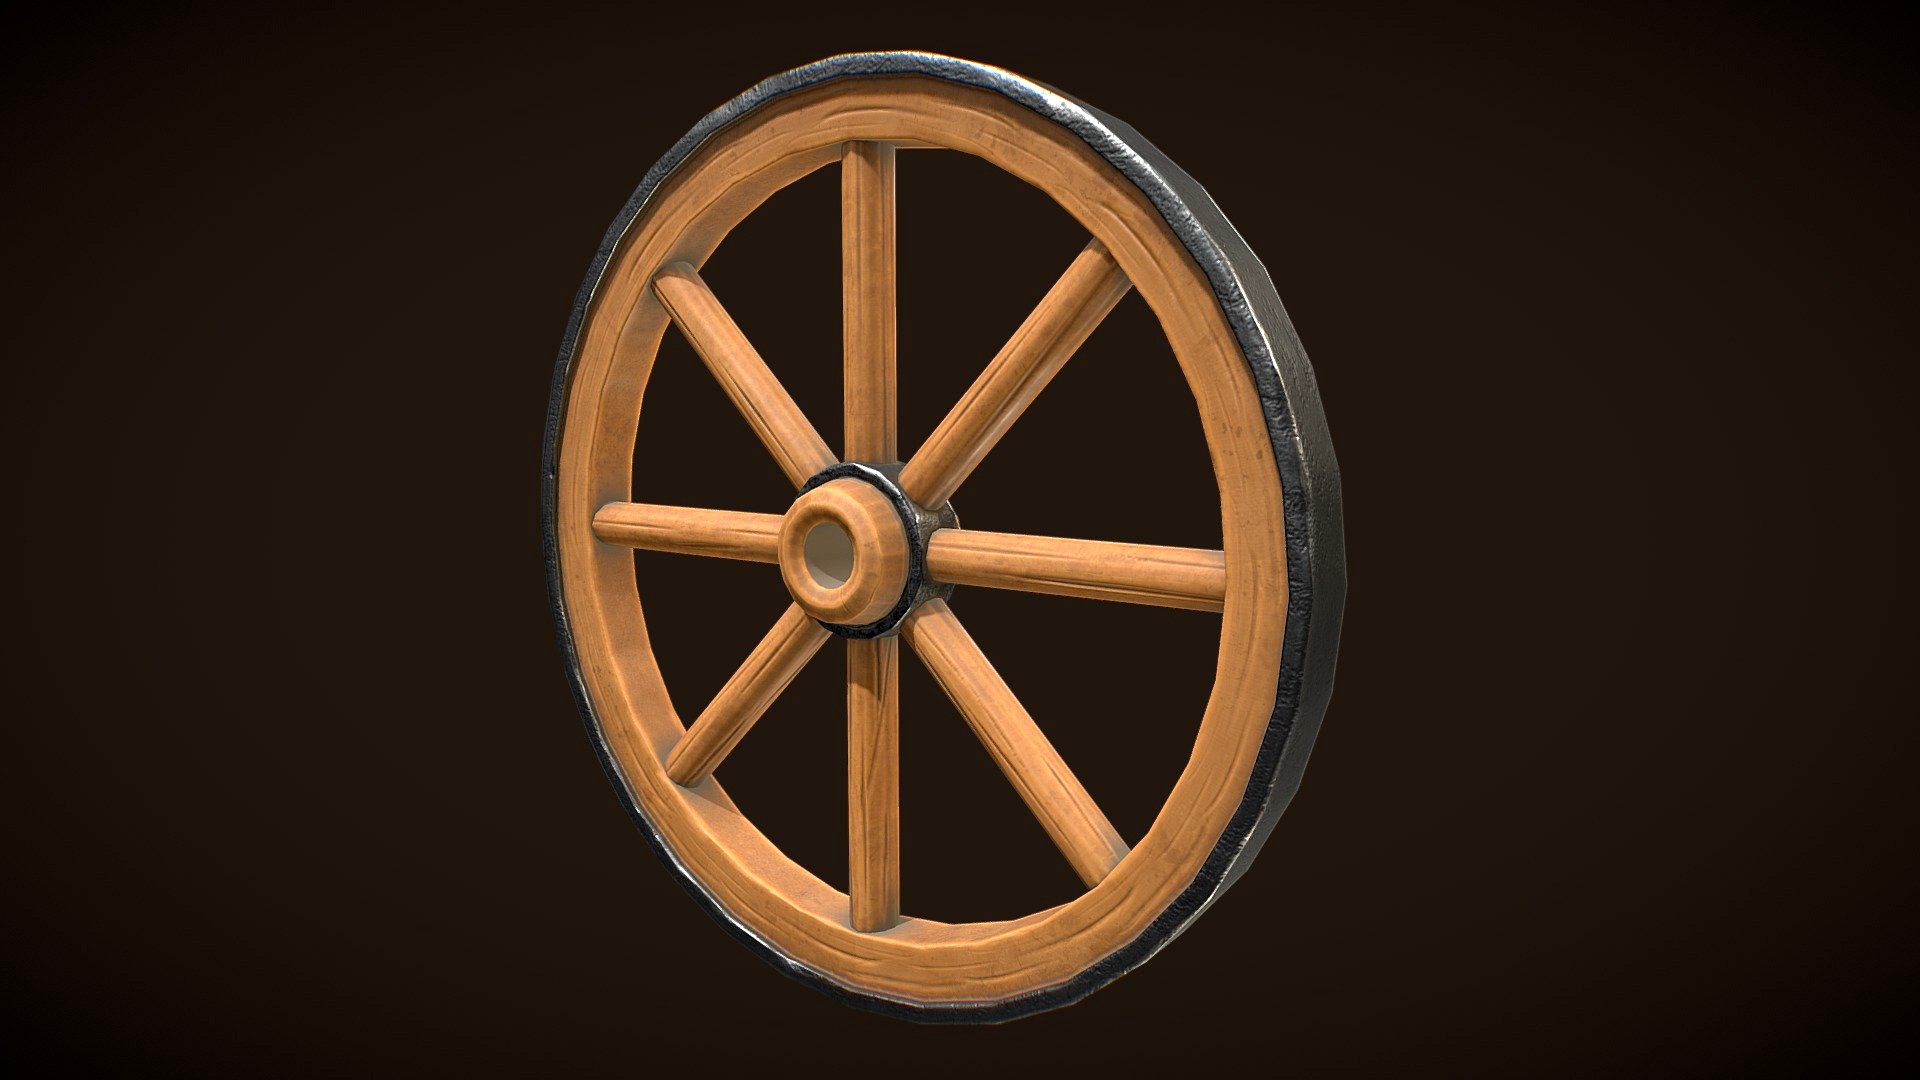 Stylized Western Wooden Wheel